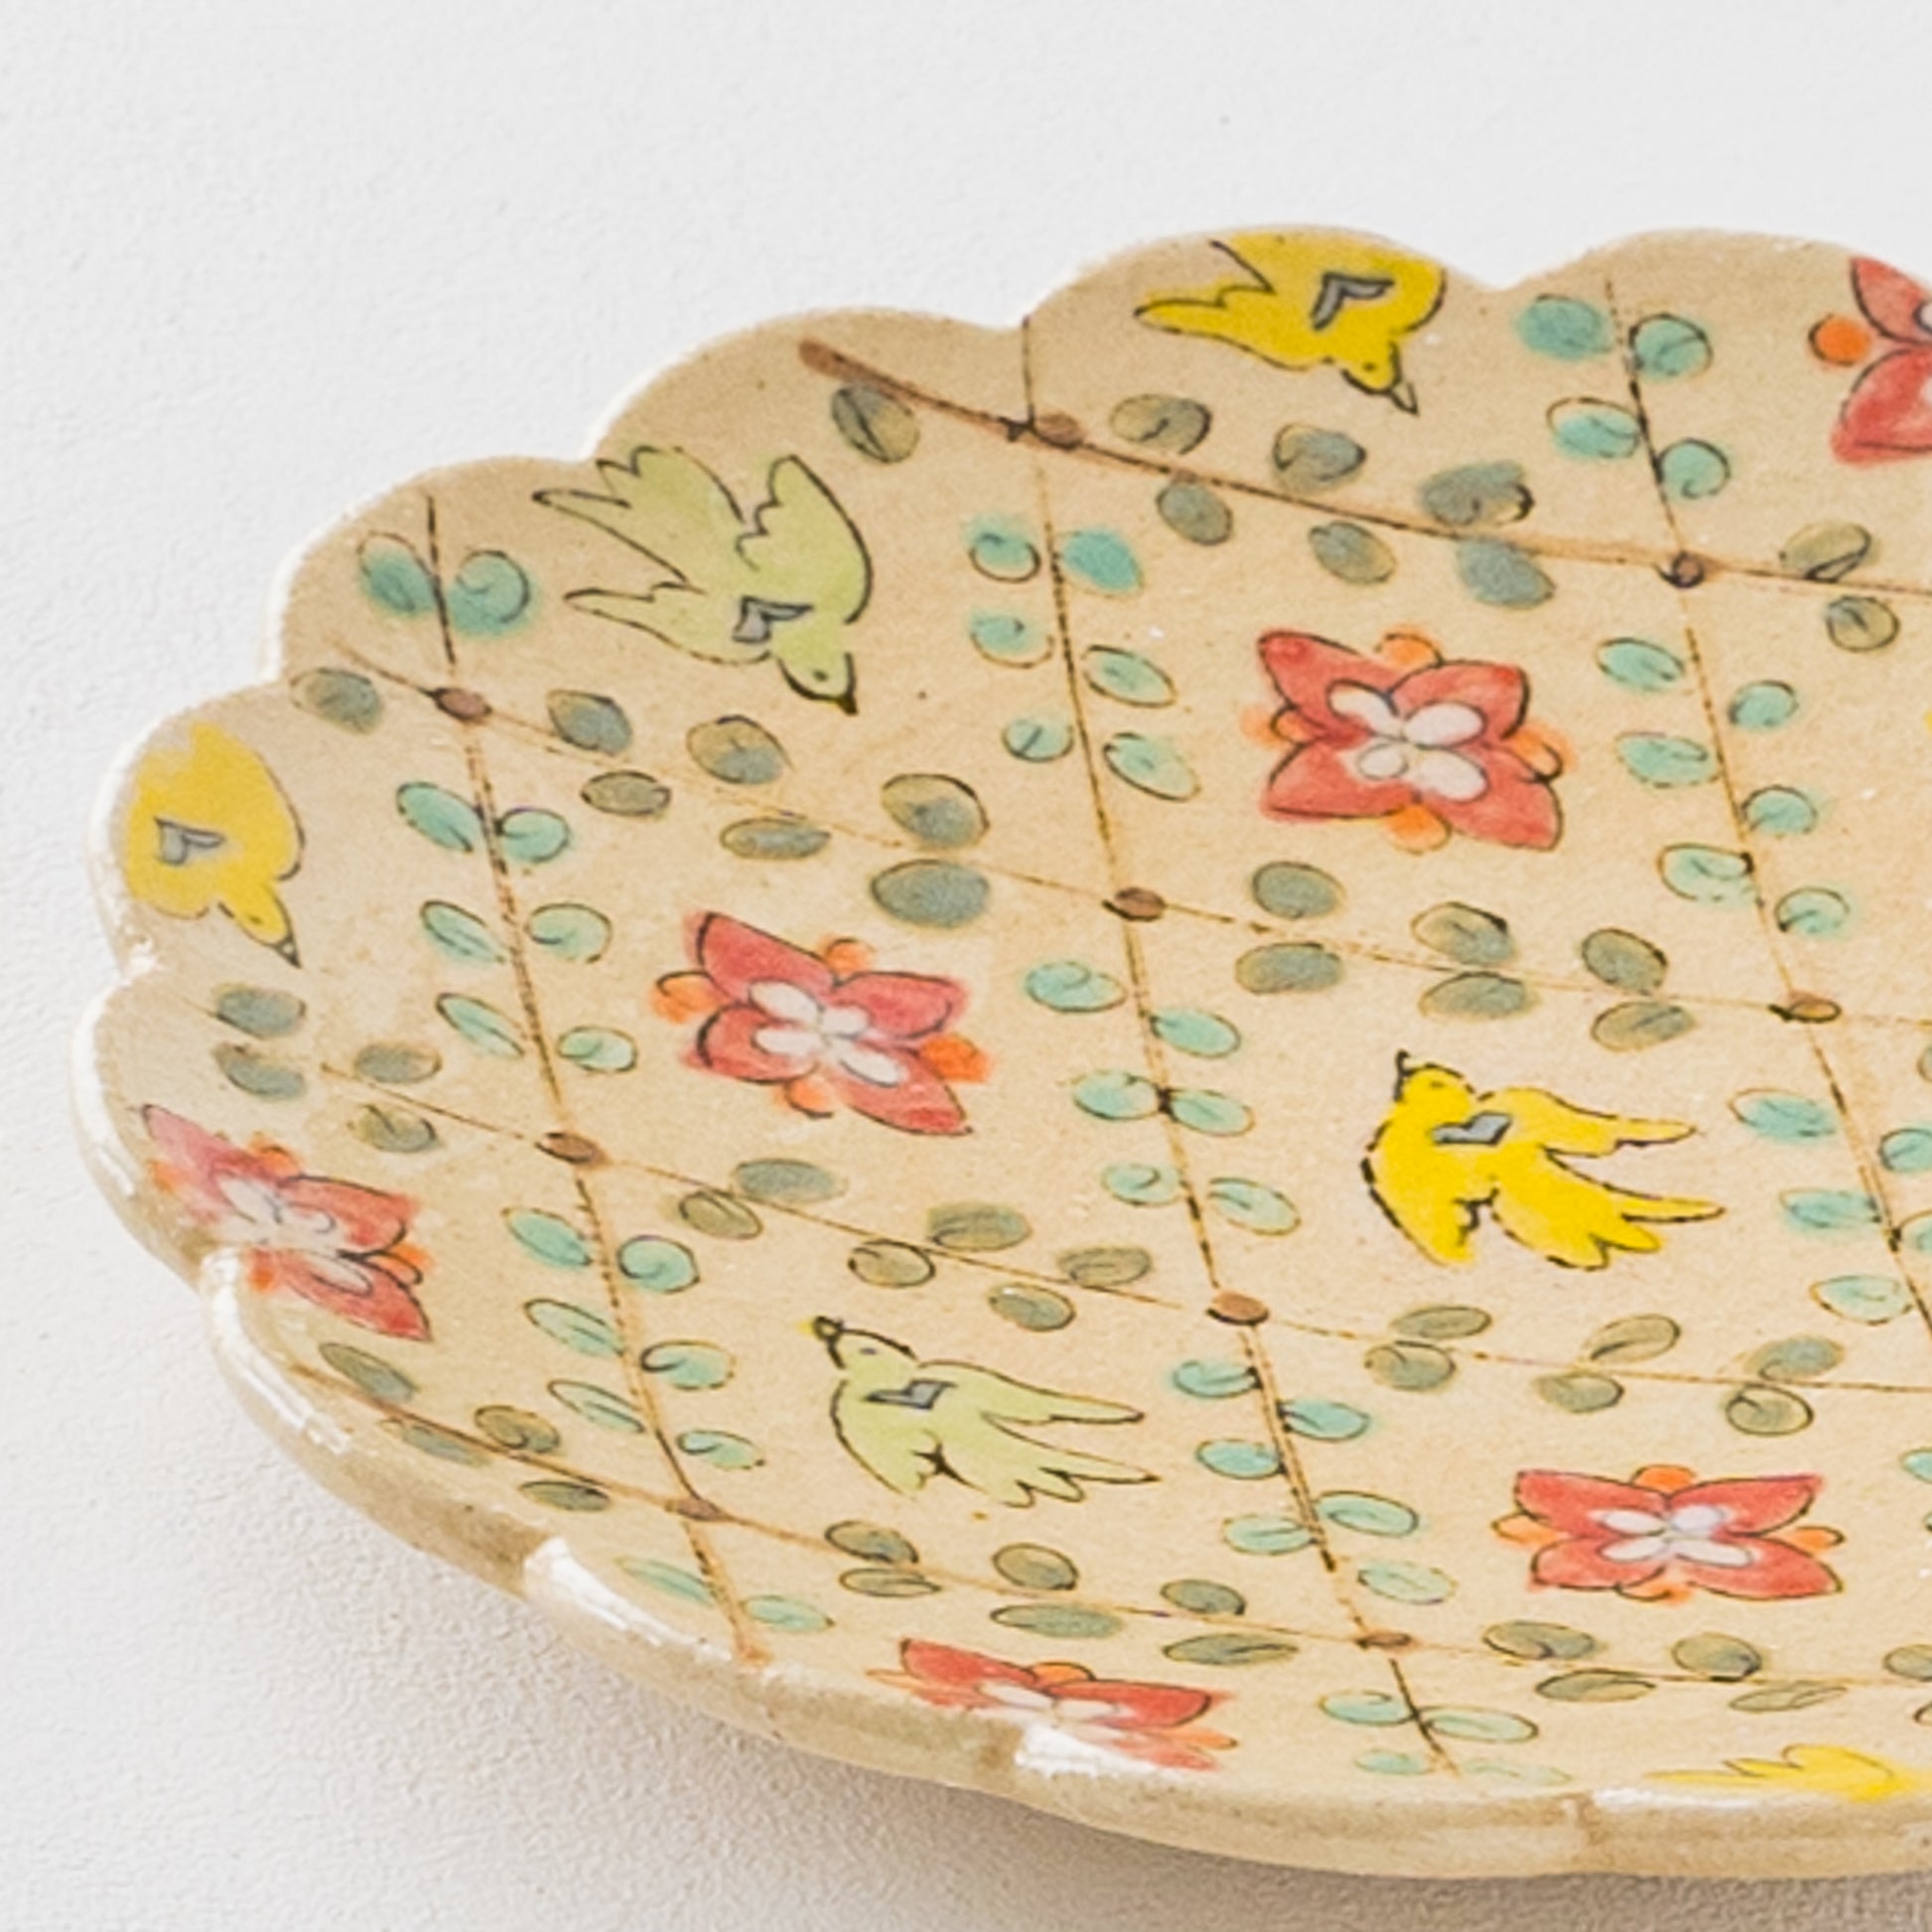 増山文さんの輪花絵皿6寸鳥とふた葉